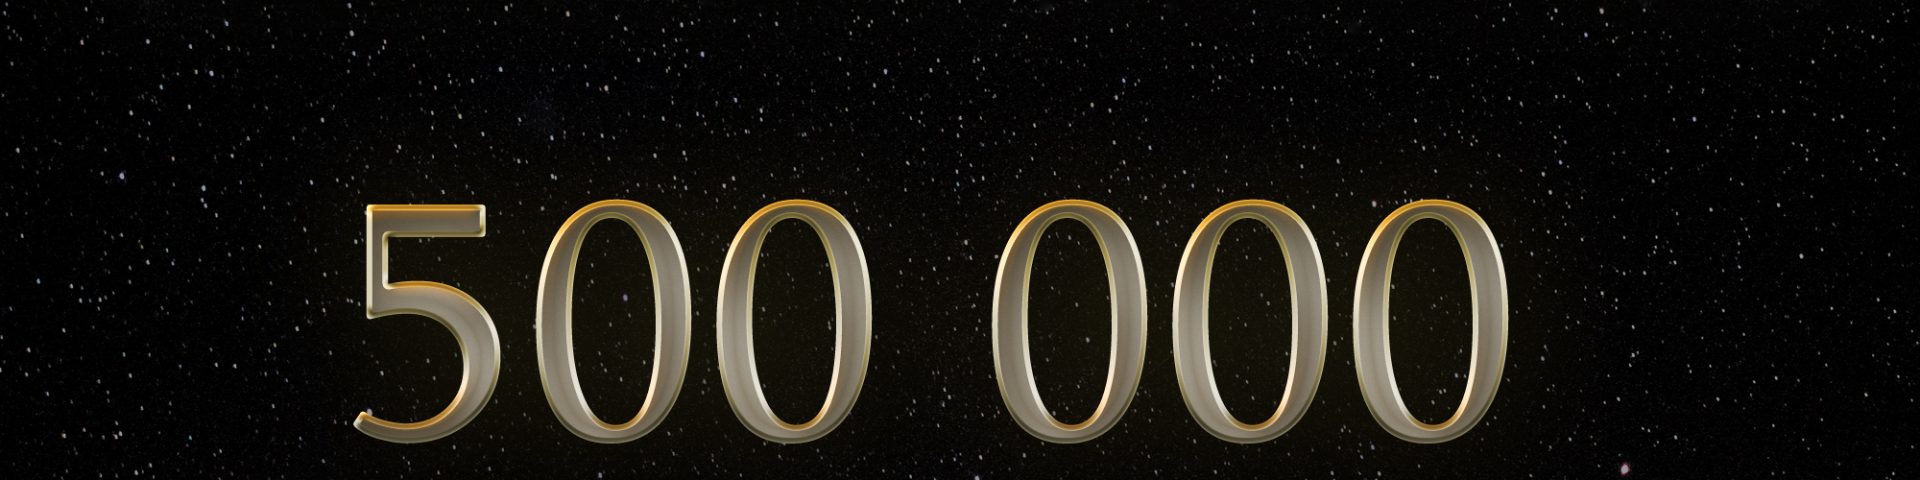 Les Chroniques Galactiques, 500 0000 écoutes !